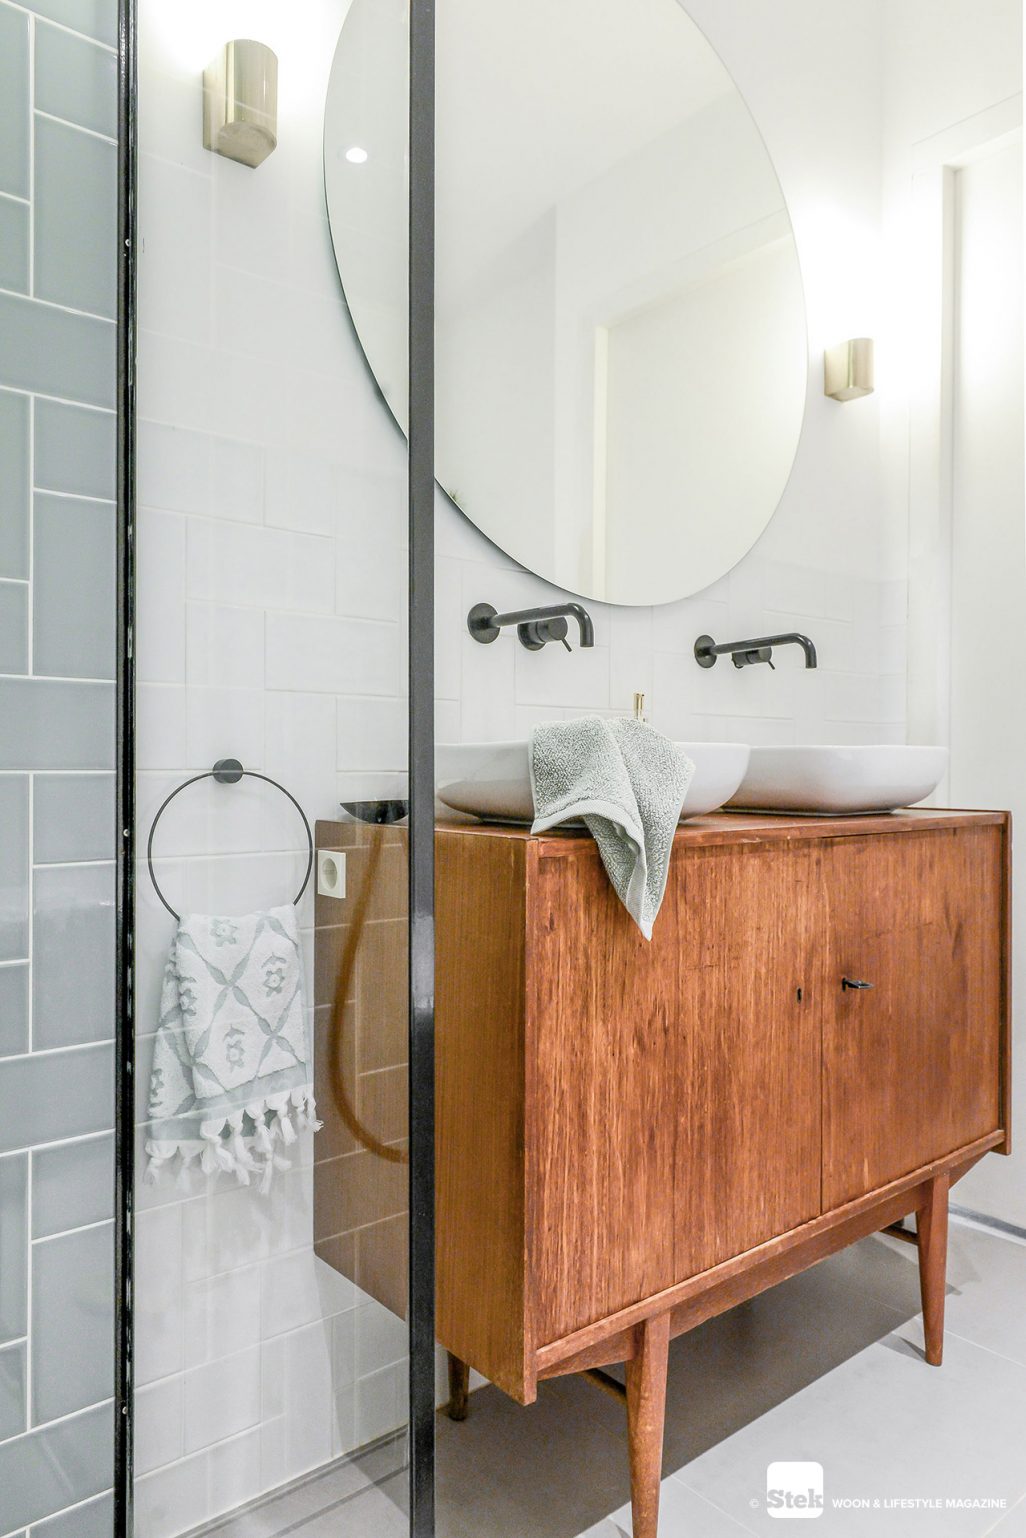 Vintage badkamer ontwerp dec.amsterdam | Stek Magazine